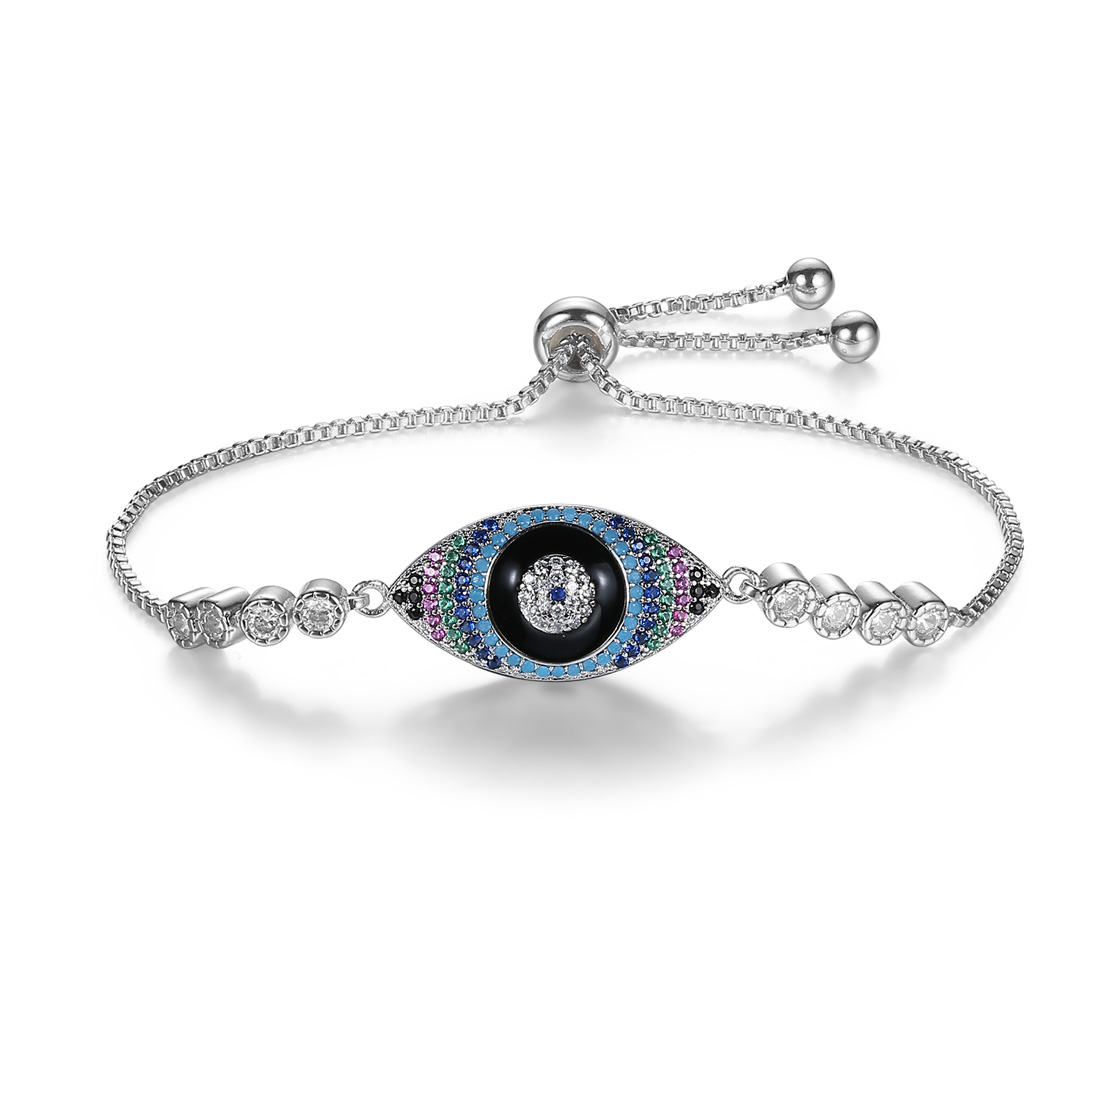 Lucky jewelry dainty fashion devil's eye bracelet design Expandable Adjustable Bangle Bracelet